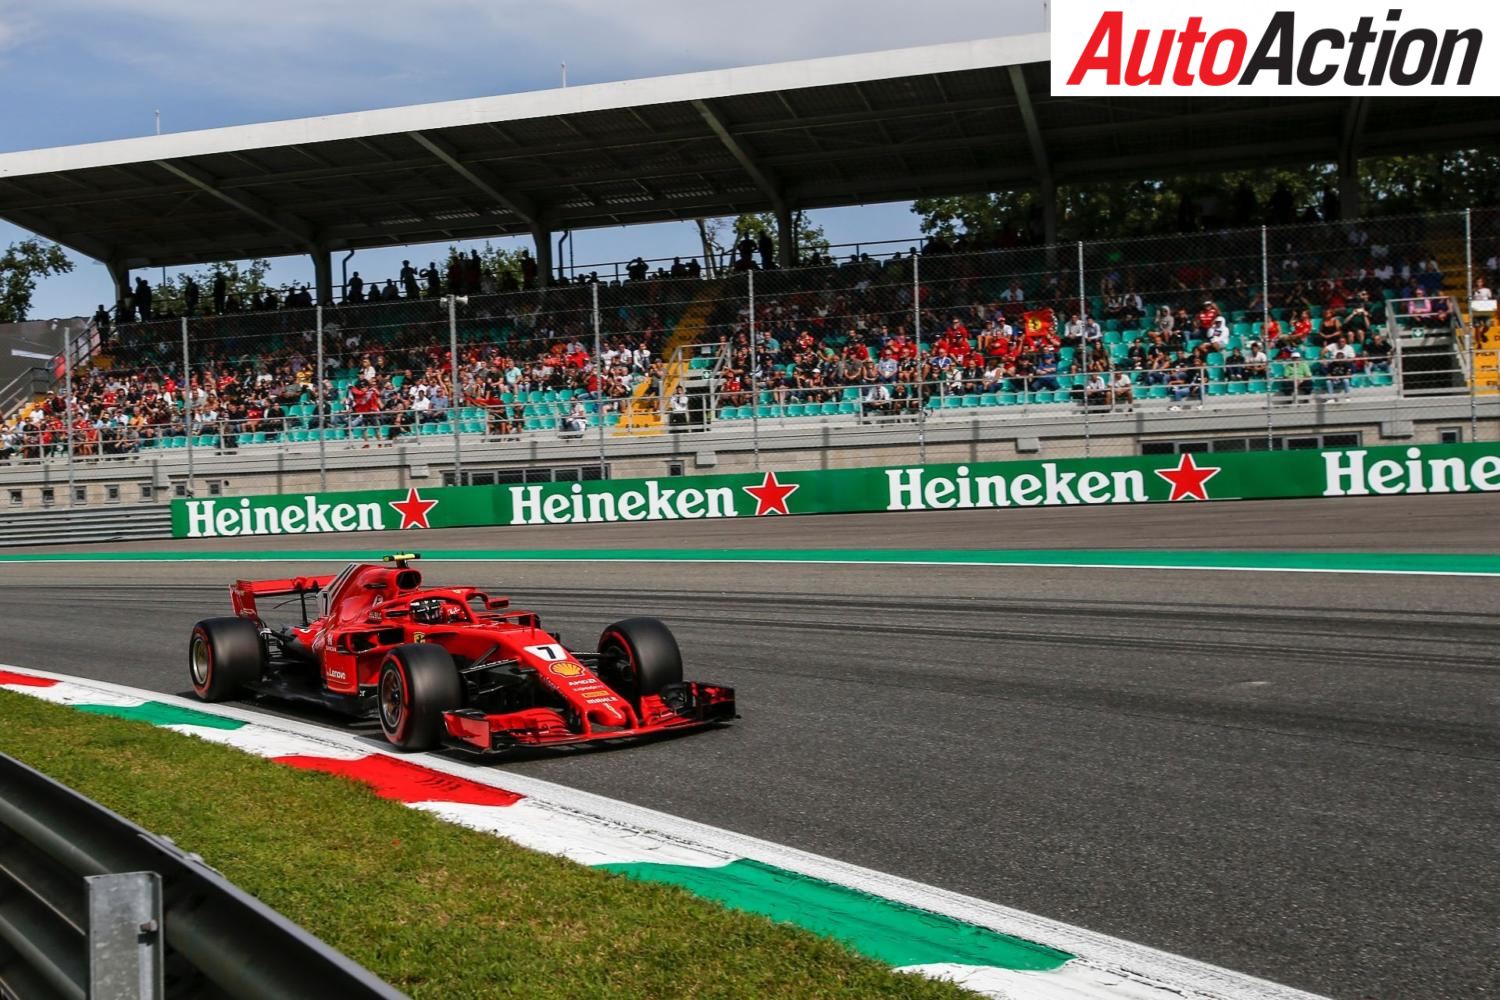 Kimi Raikkonen will start the Italian Grand Prix from pole - Photo: Suttons Images